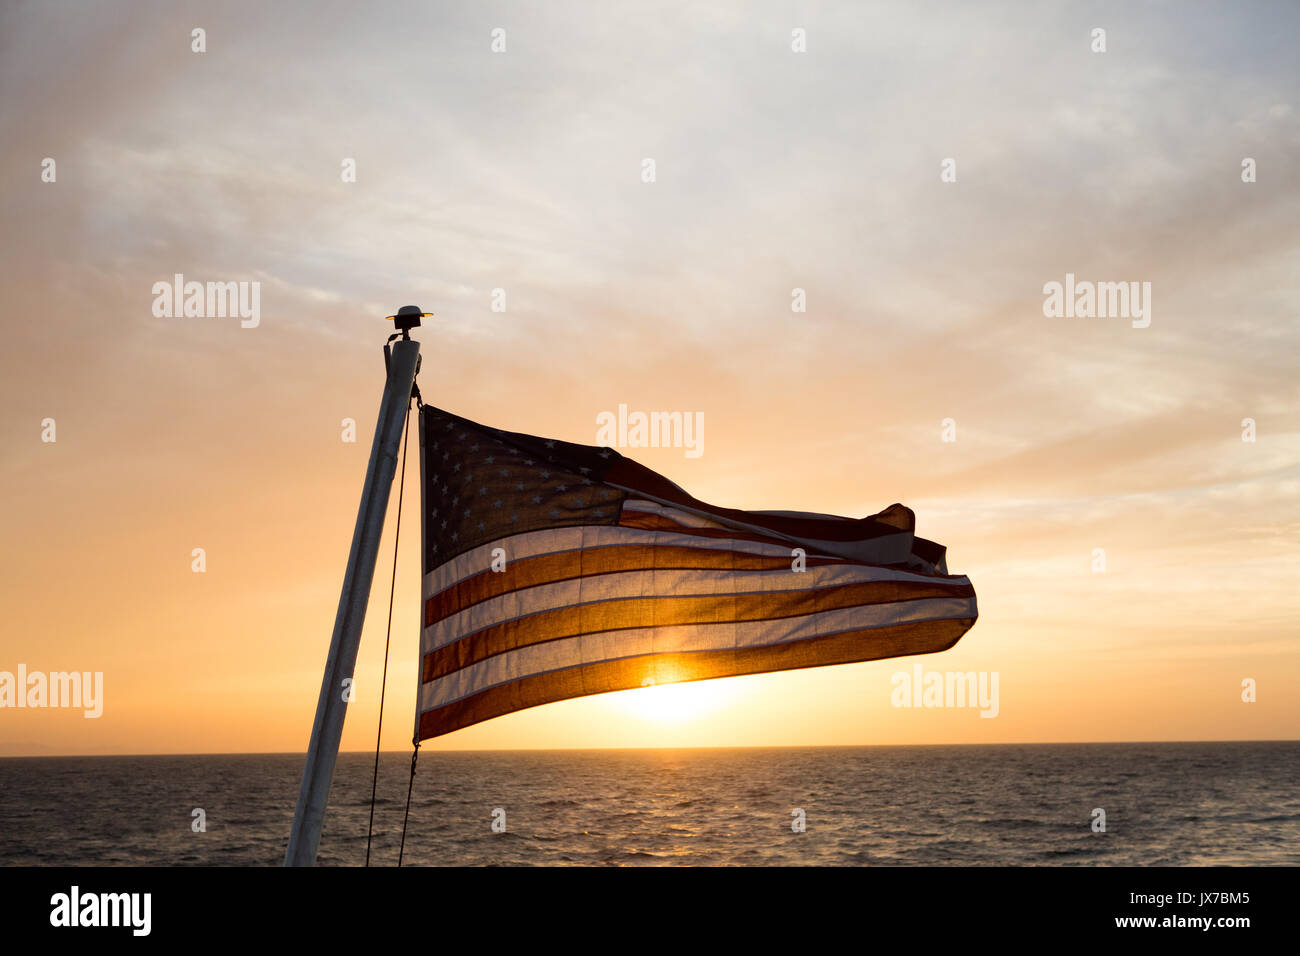 In den Gewässern in der Nähe von Isla Coiba Nationalpark, die Sonne geht auf und leuchtet eine amerikanische Flagge, die von einer Expedition Cruise Ship fliegt. Stockfoto